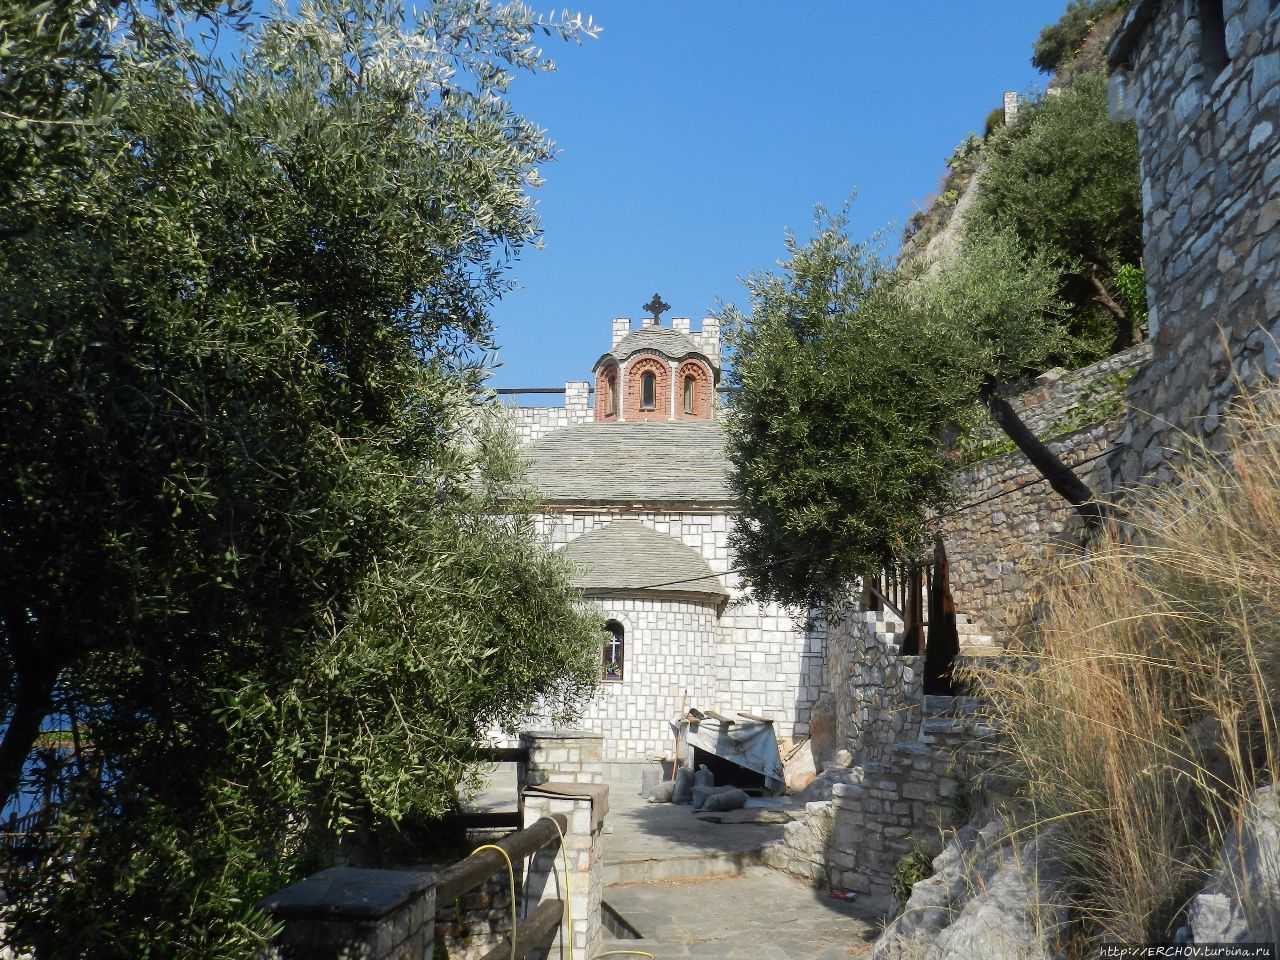 У Старца Автономное монашеское государство Святой Горы Афон, Греция